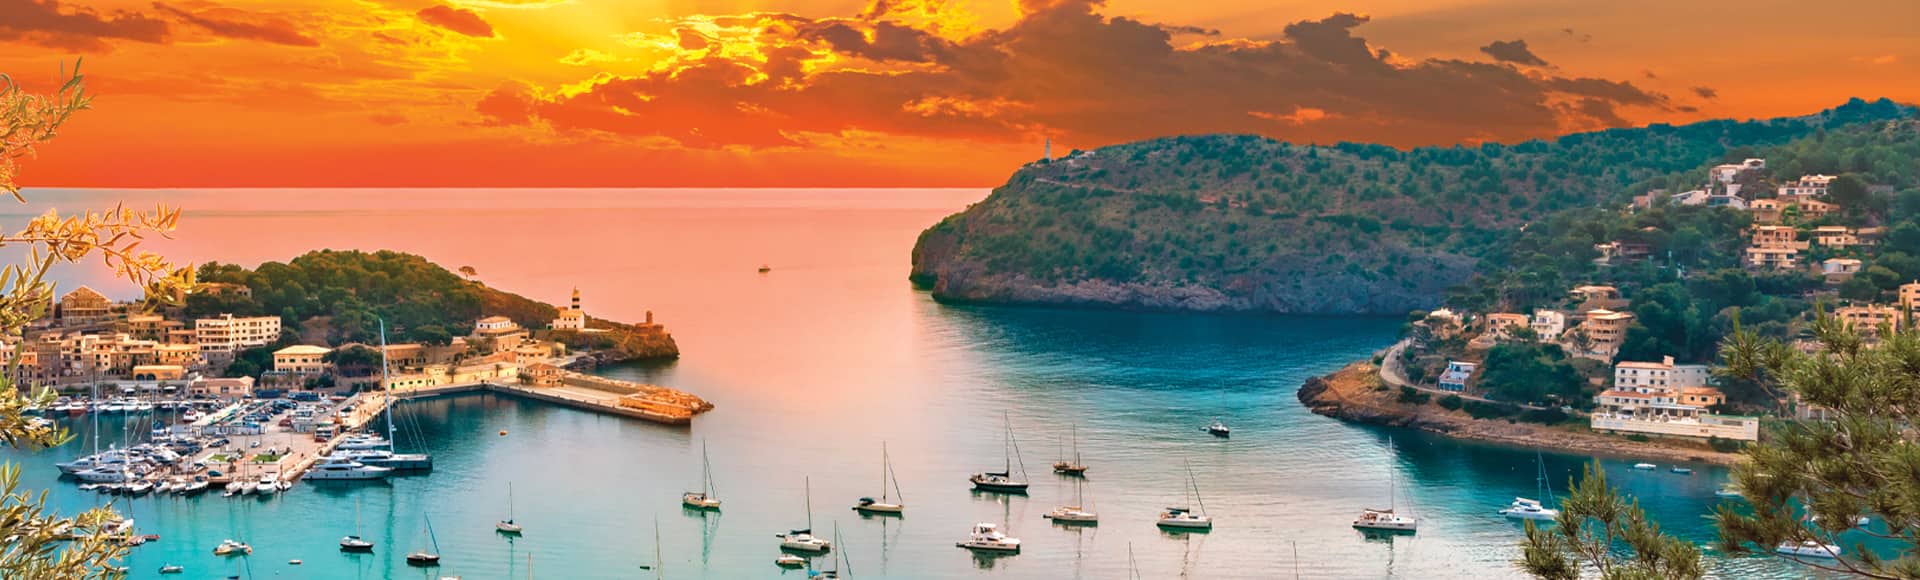 Oceania Cruises to Palma de Mallorca, Spain